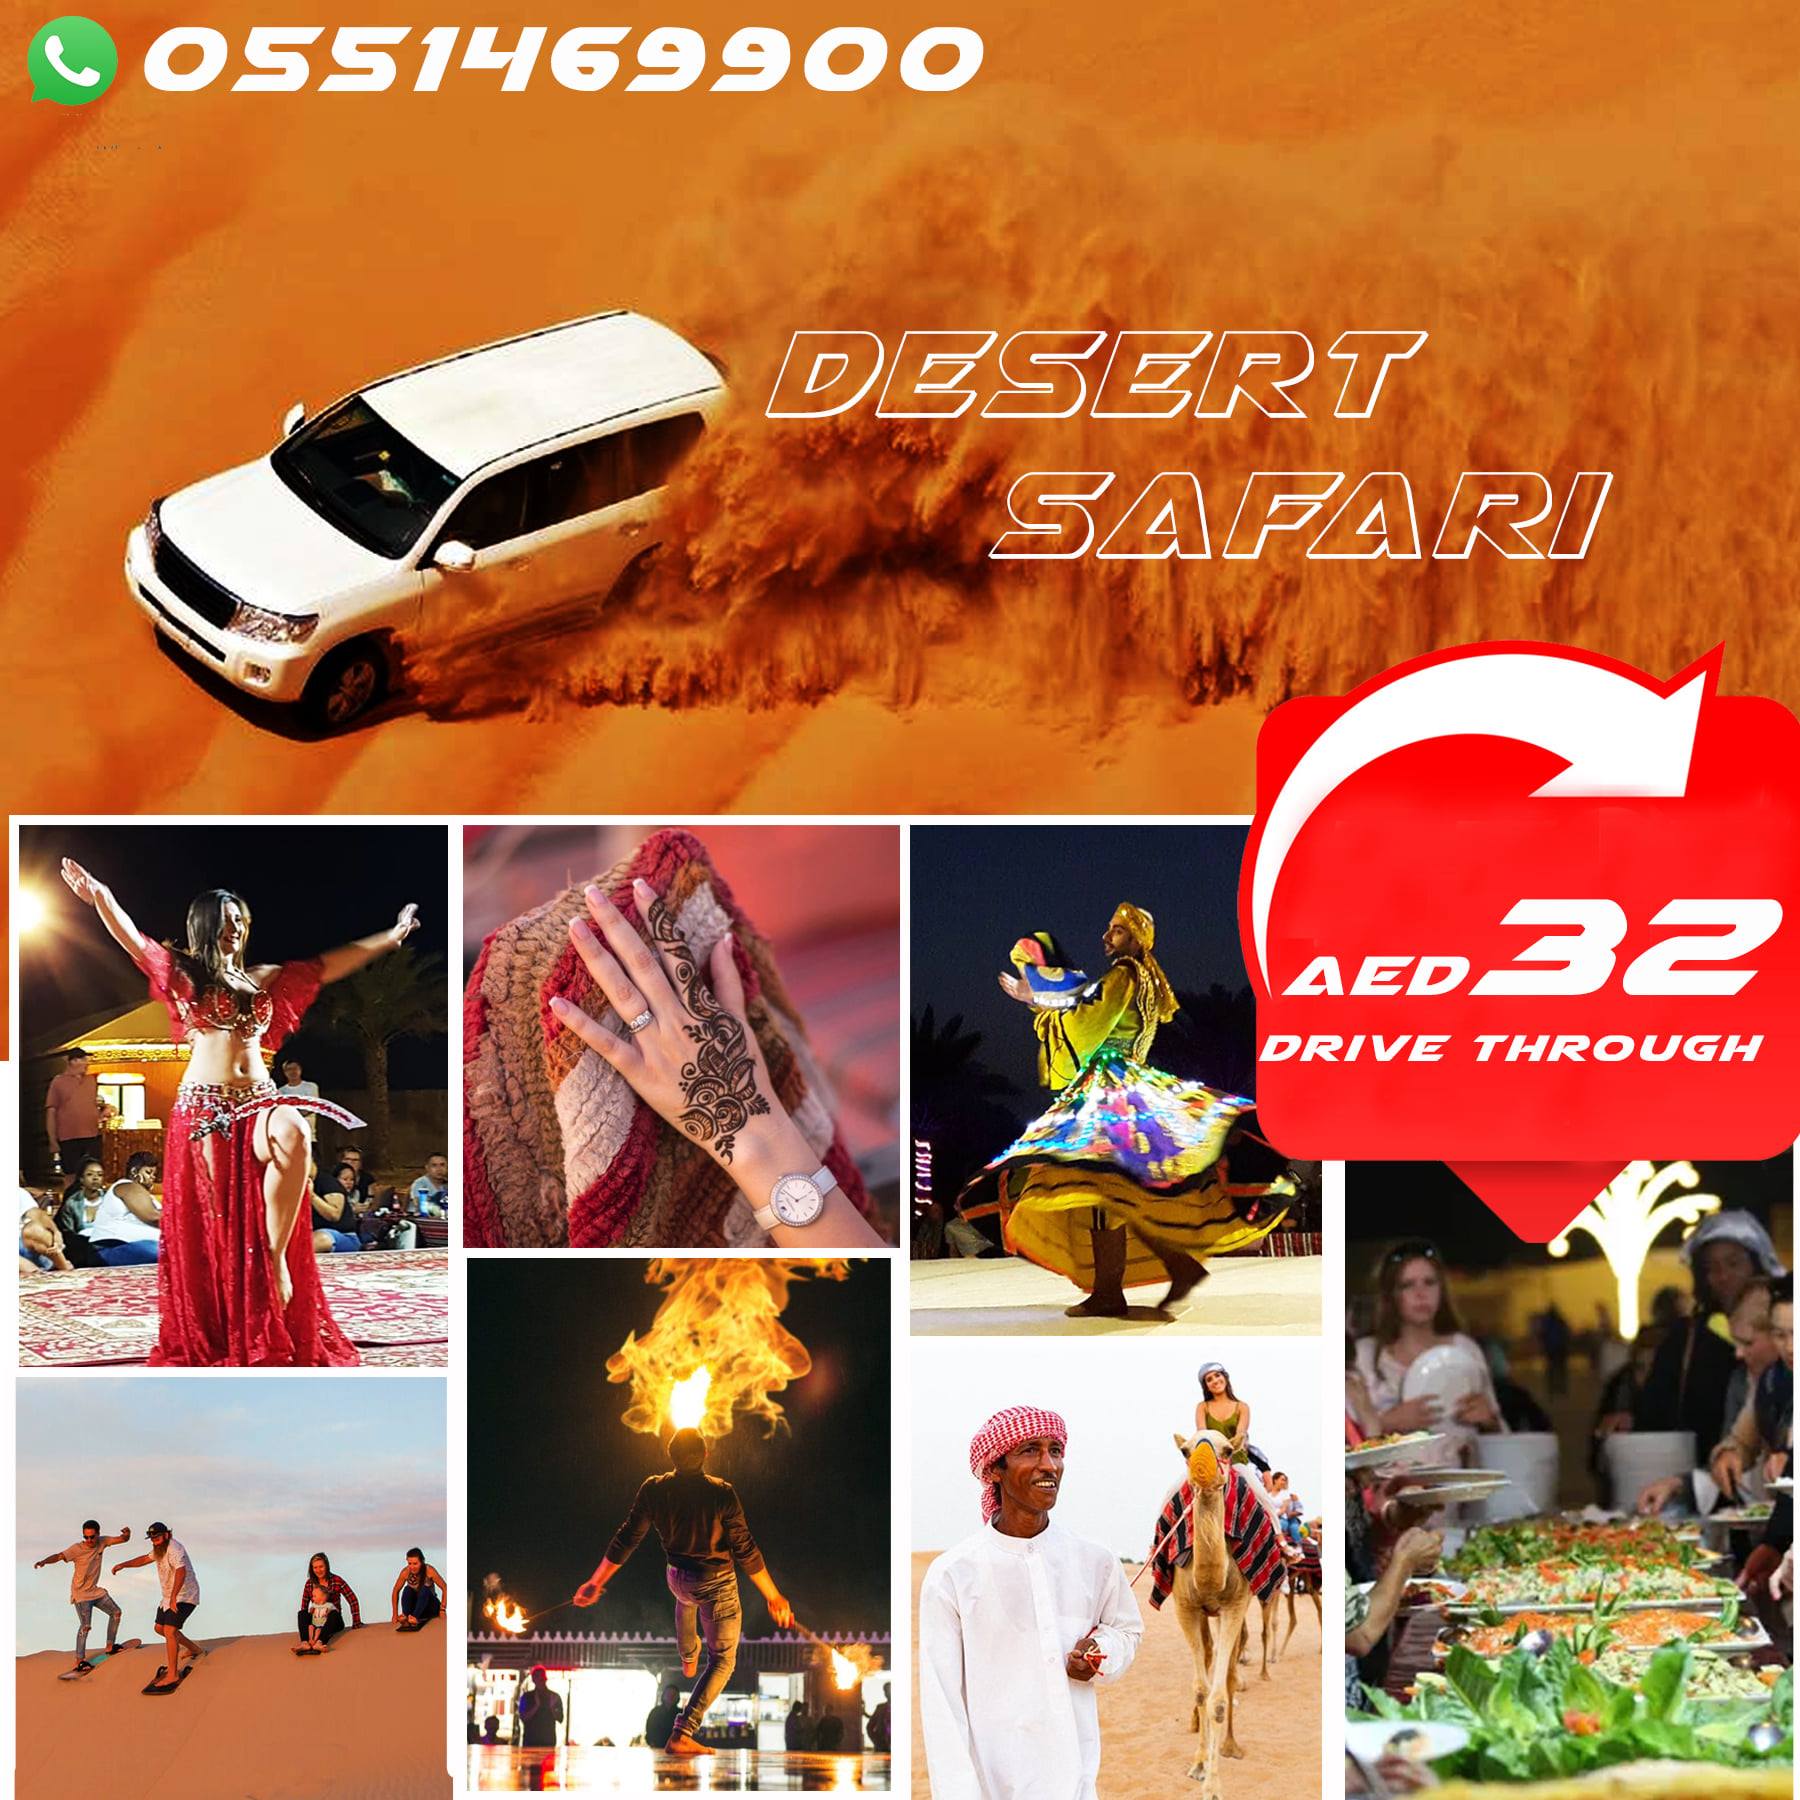 desert safari travel agency